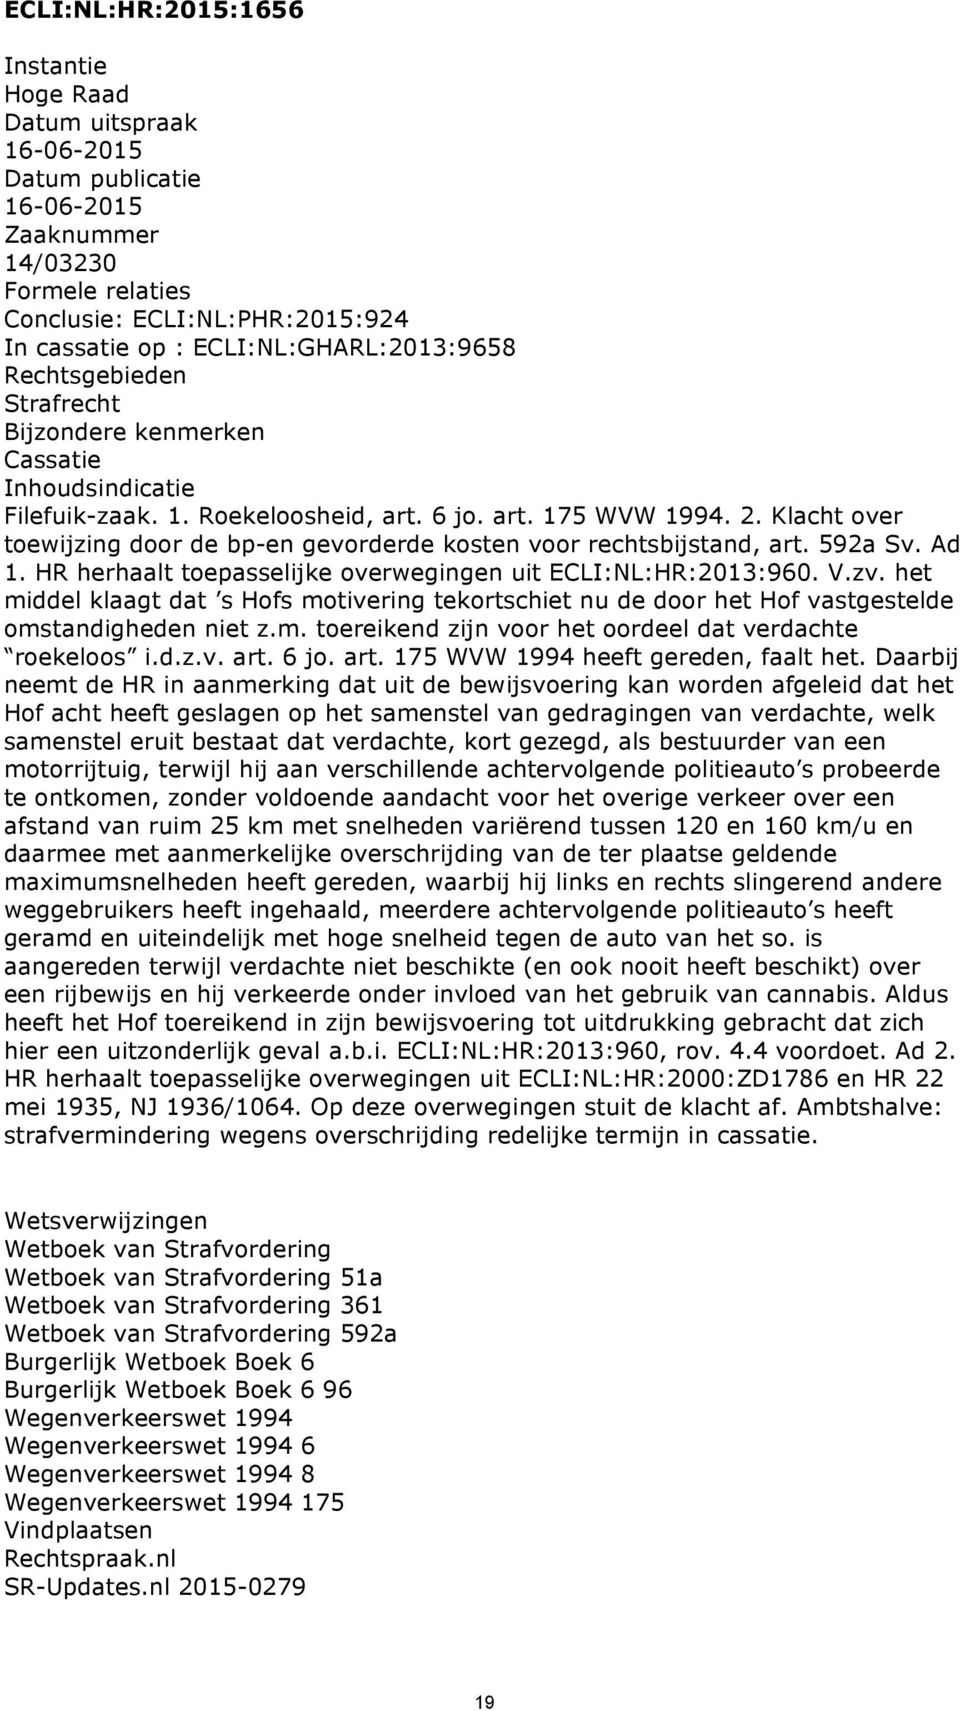 Klacht over toewijzing door de bp-en gevorderde kosten voor rechtsbijstand, art. 592a Sv. Ad 1. HR herhaalt toepasselijke overwegingen uit ECLI:NL:HR:2013:960. V.zv.